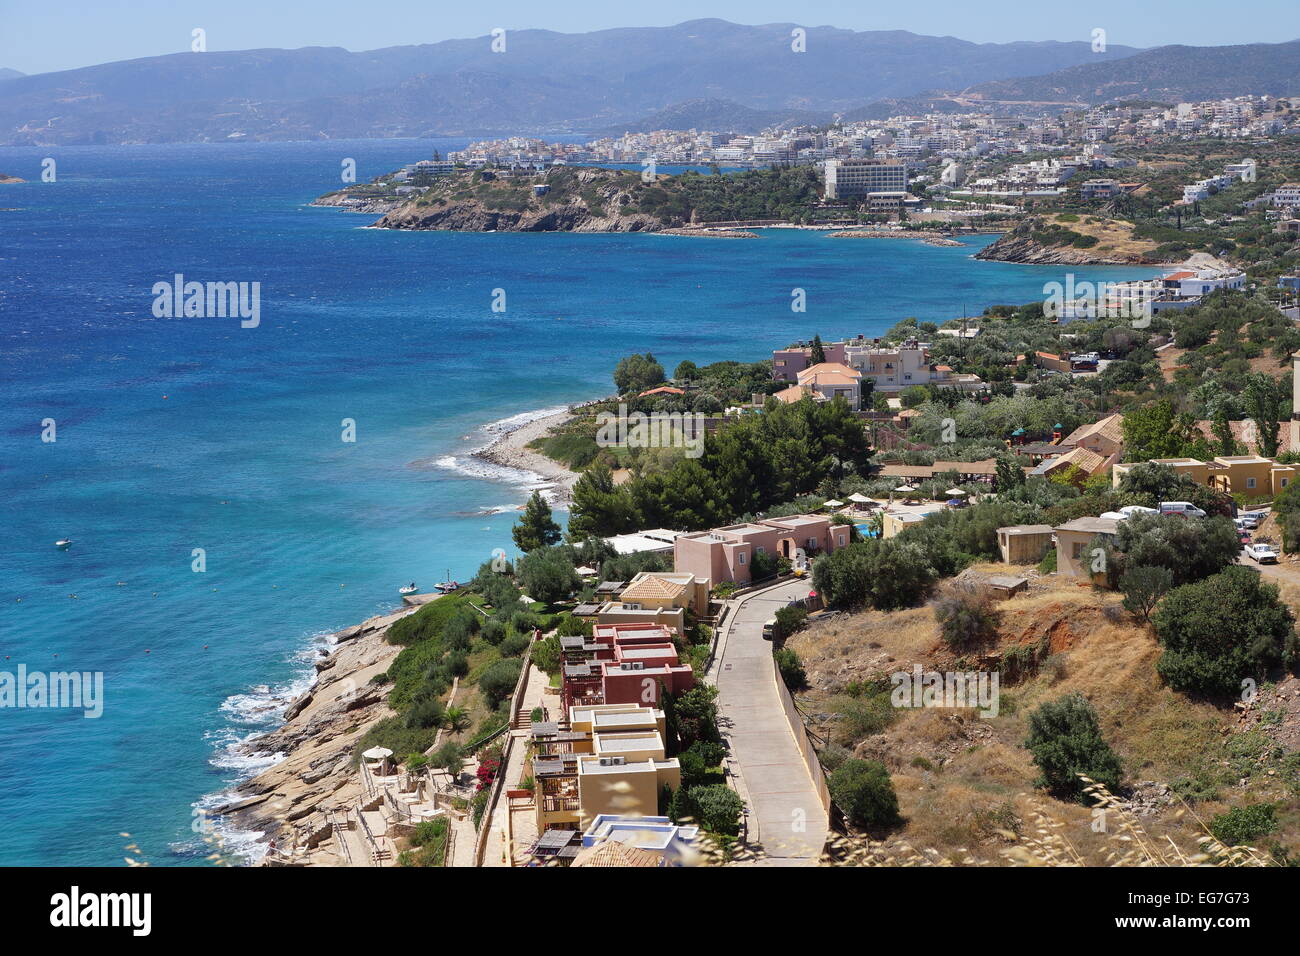 La baie de Mirabello et Agios Nikolaos voir l'île de Crète, Grèce Banque D'Images